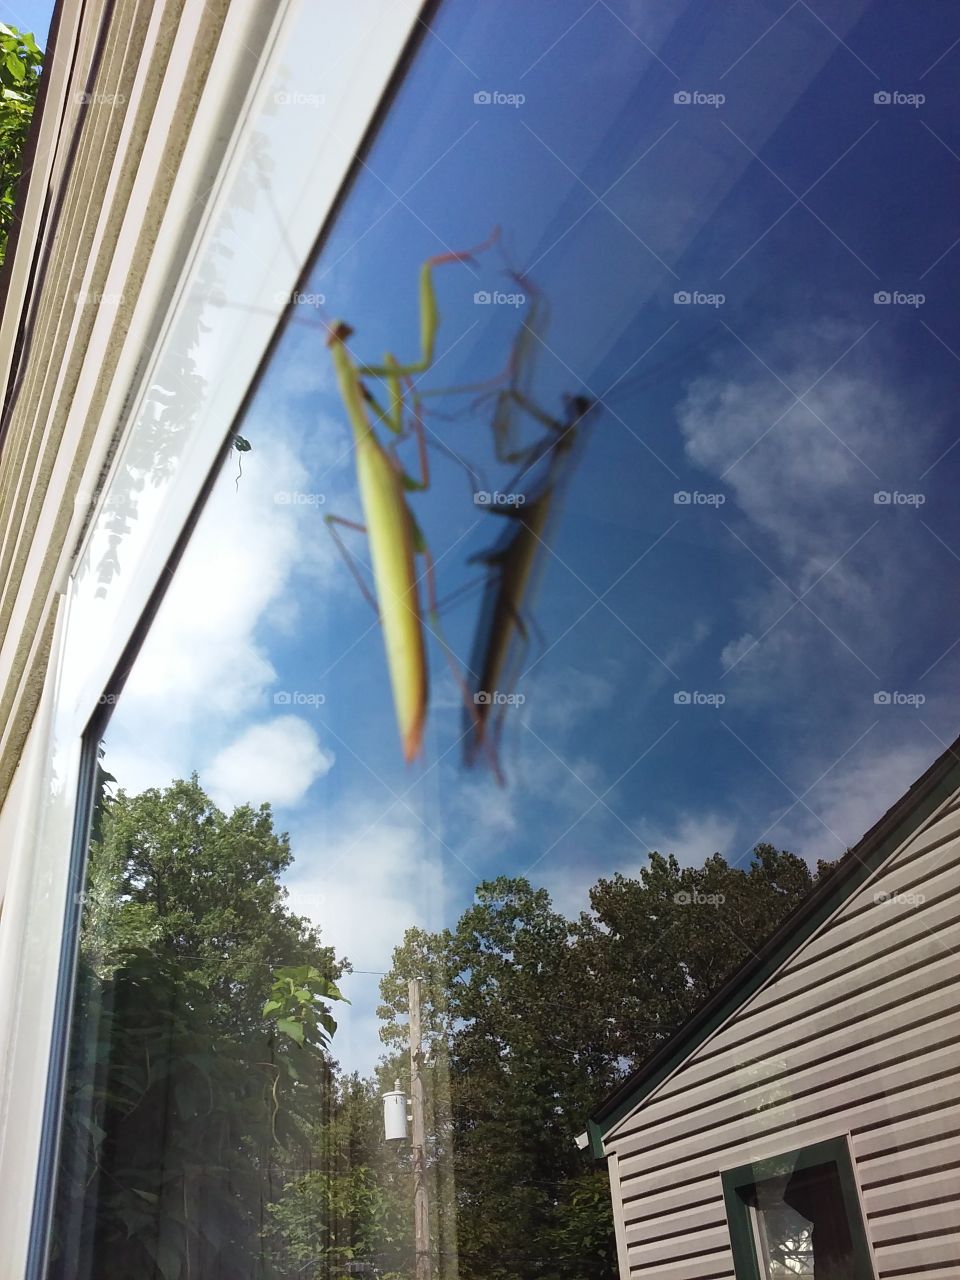 Mantis praying for good weather.